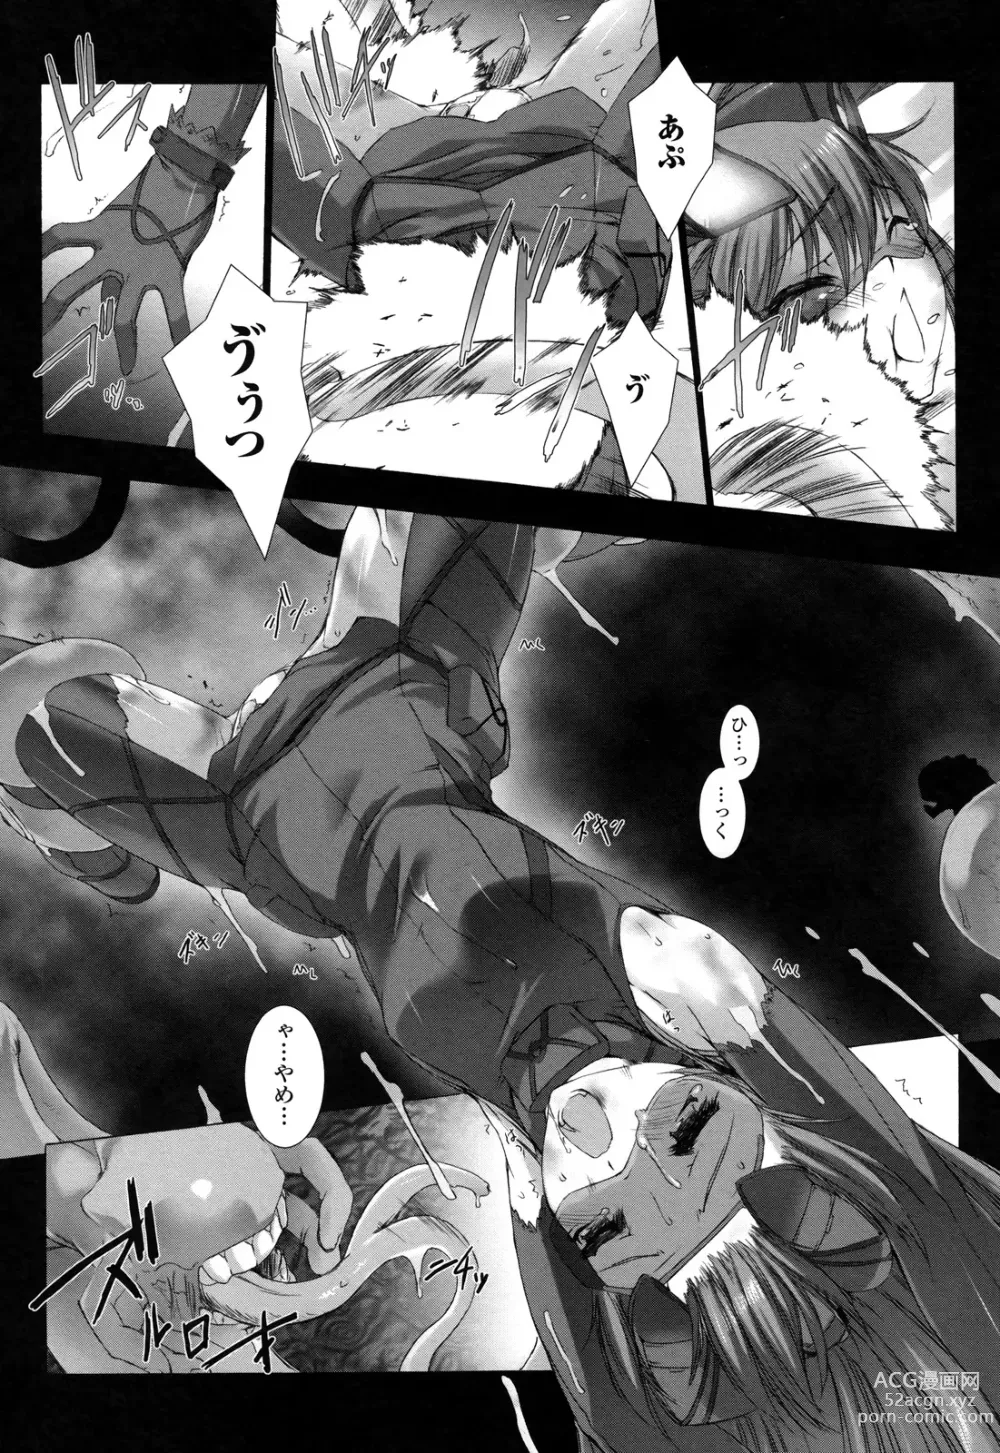 Page 190 of manga Ziggurat 2